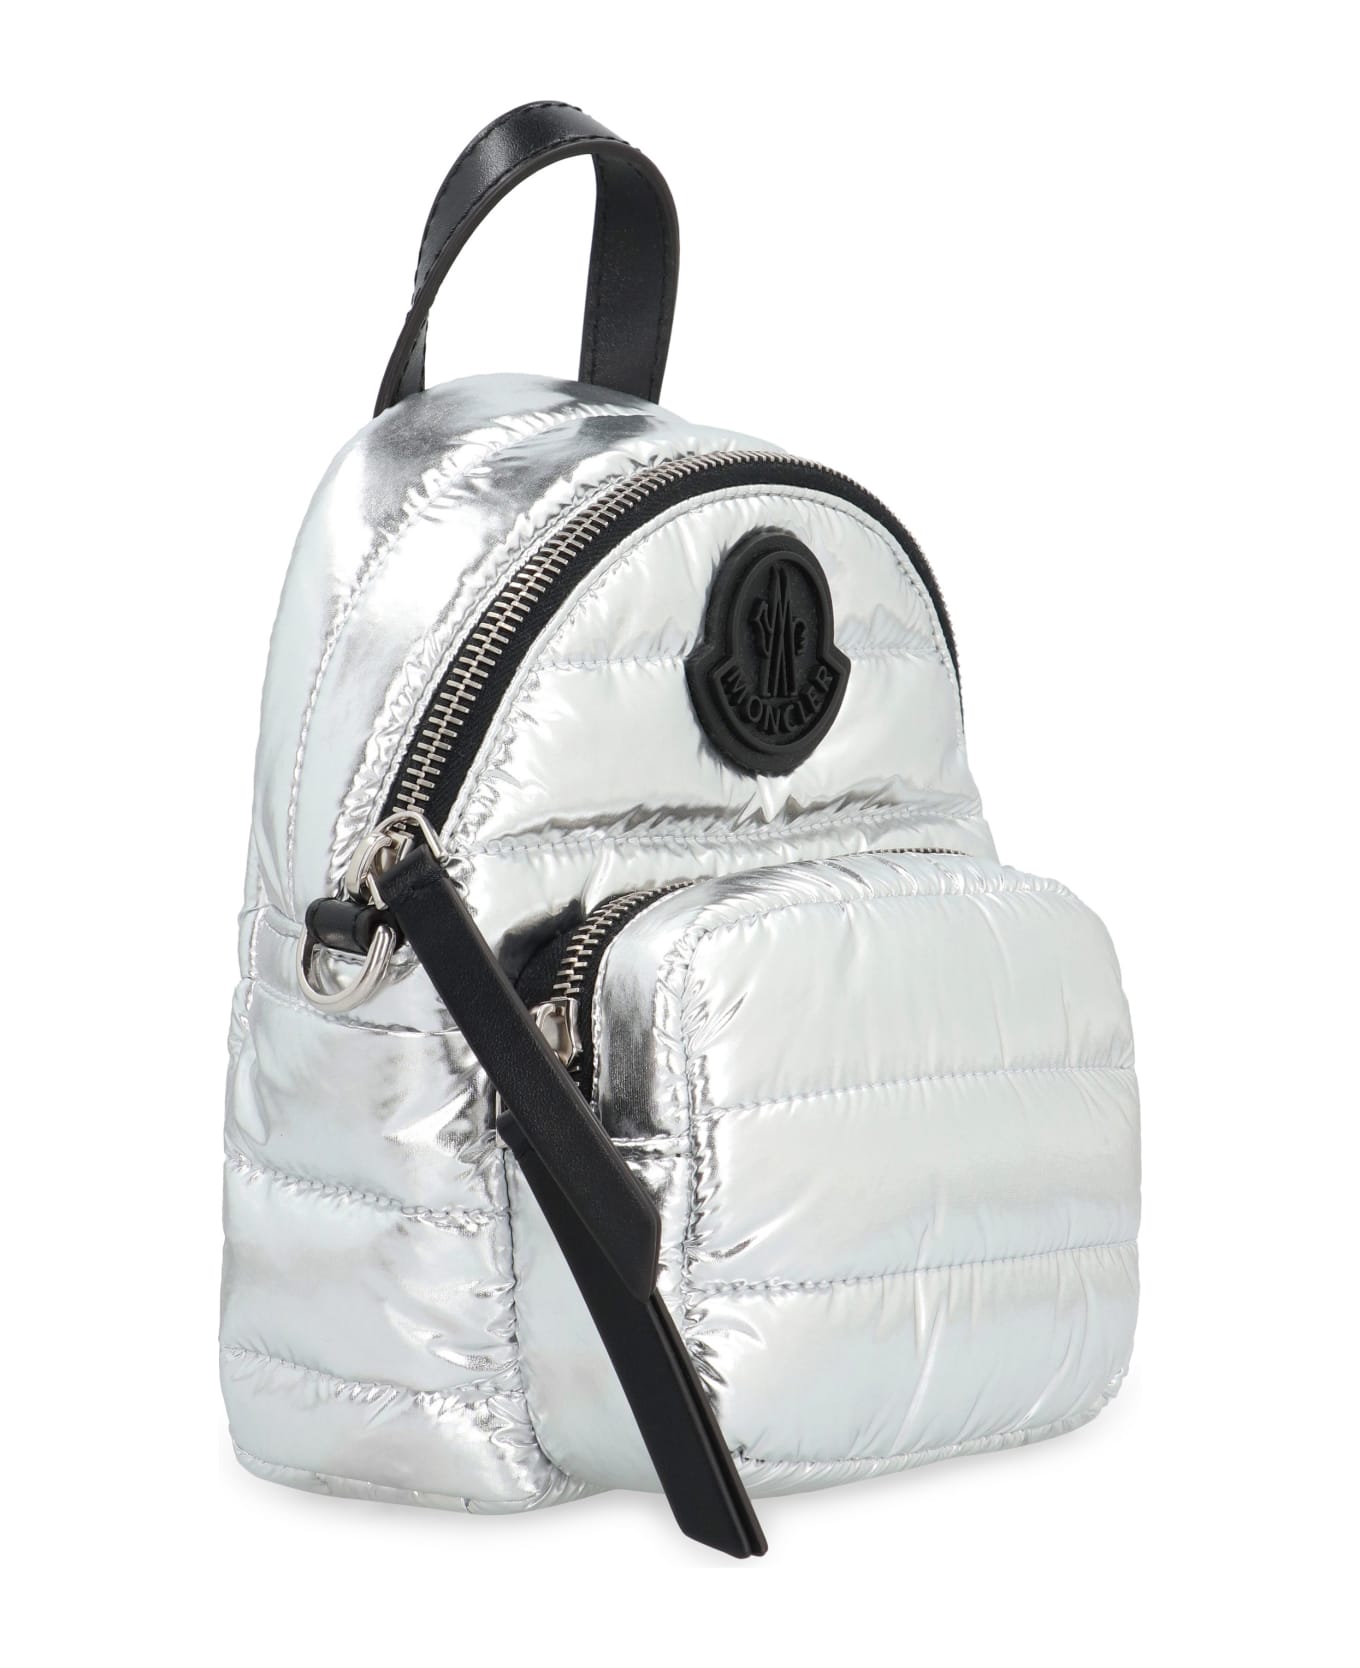 Moncler Kilia Fabric Shoulder Bag - Silver バックパック